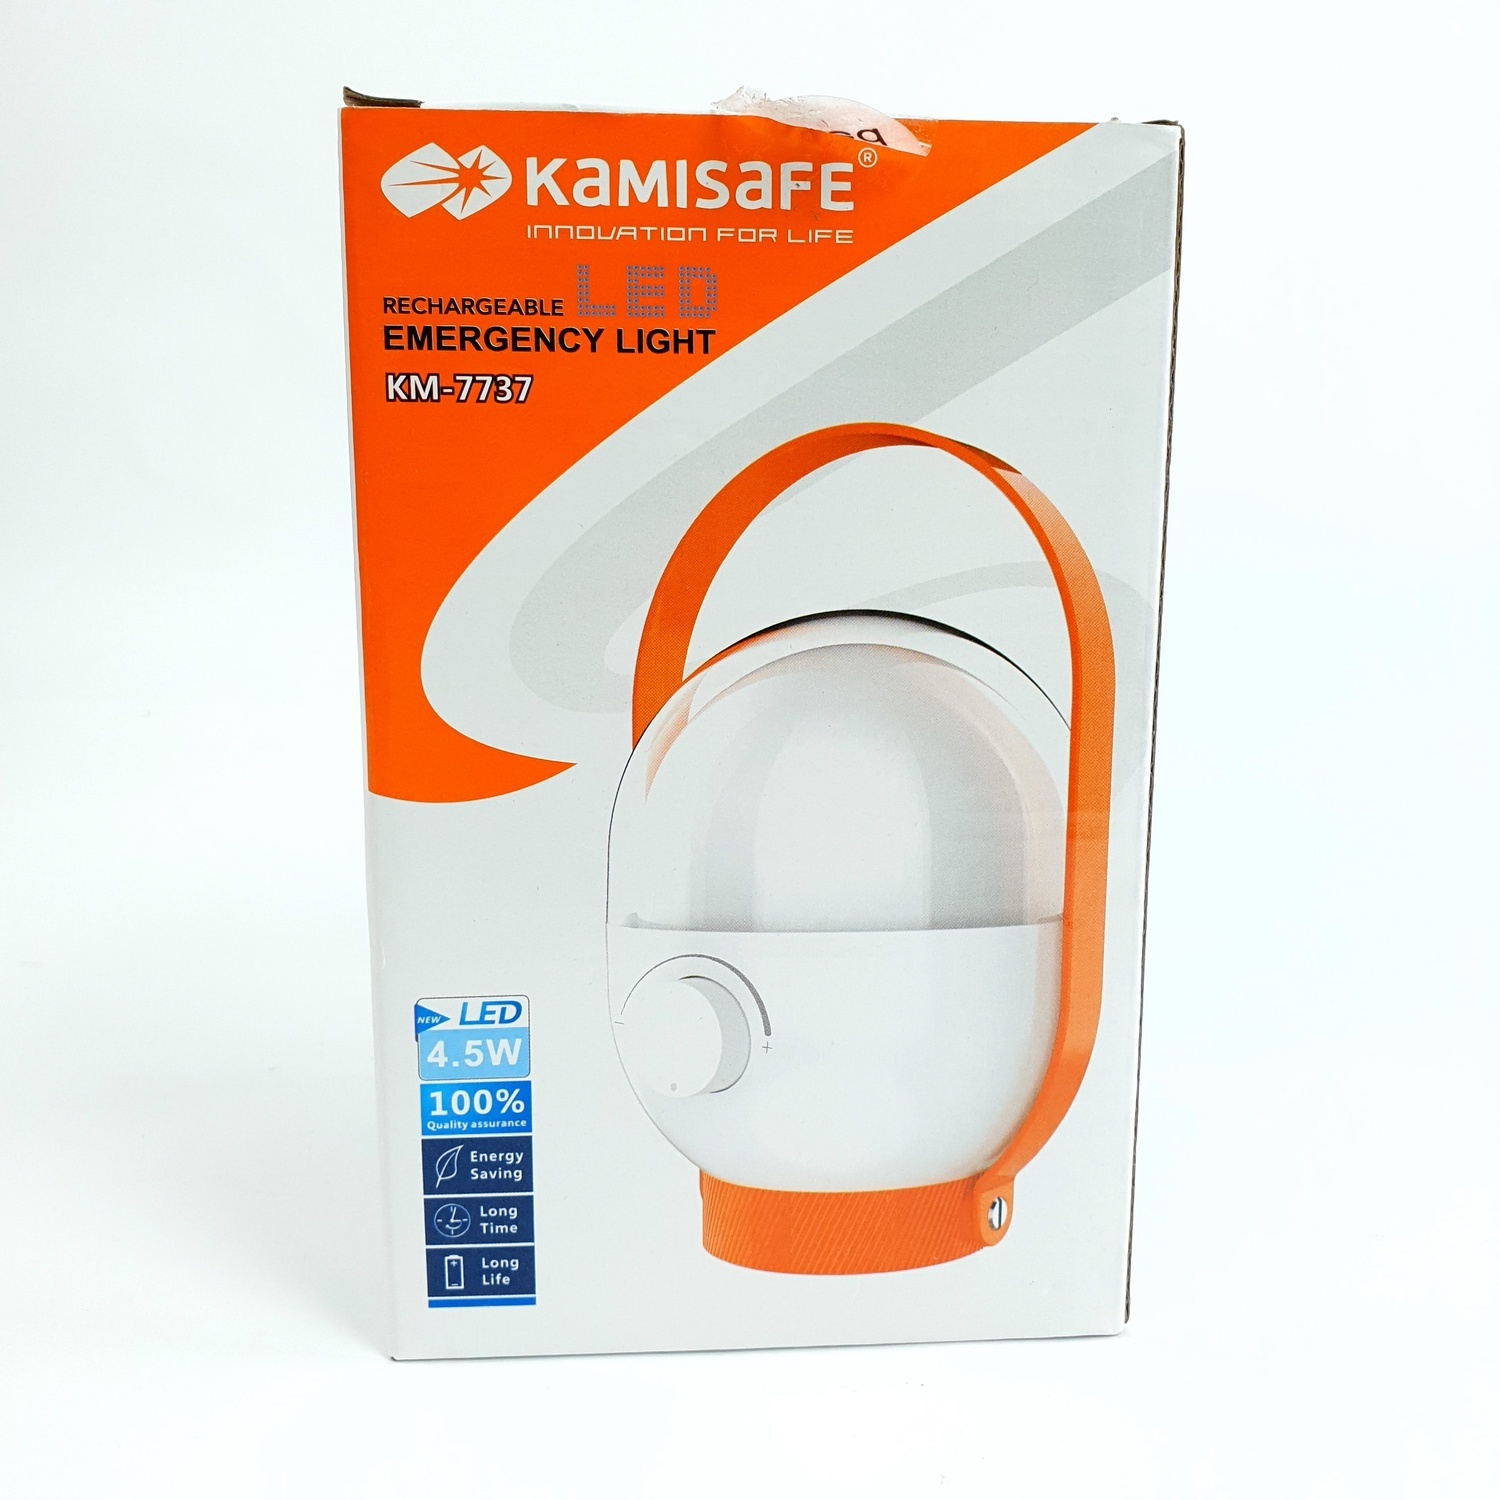 KAMISAFE ตะเกียงไฟฉาย LED ชาร์จไฟและปรับแสงได้ หมุนได้ 360° รุ่น KM-7737 คละสี (ส้ม/เขียว)